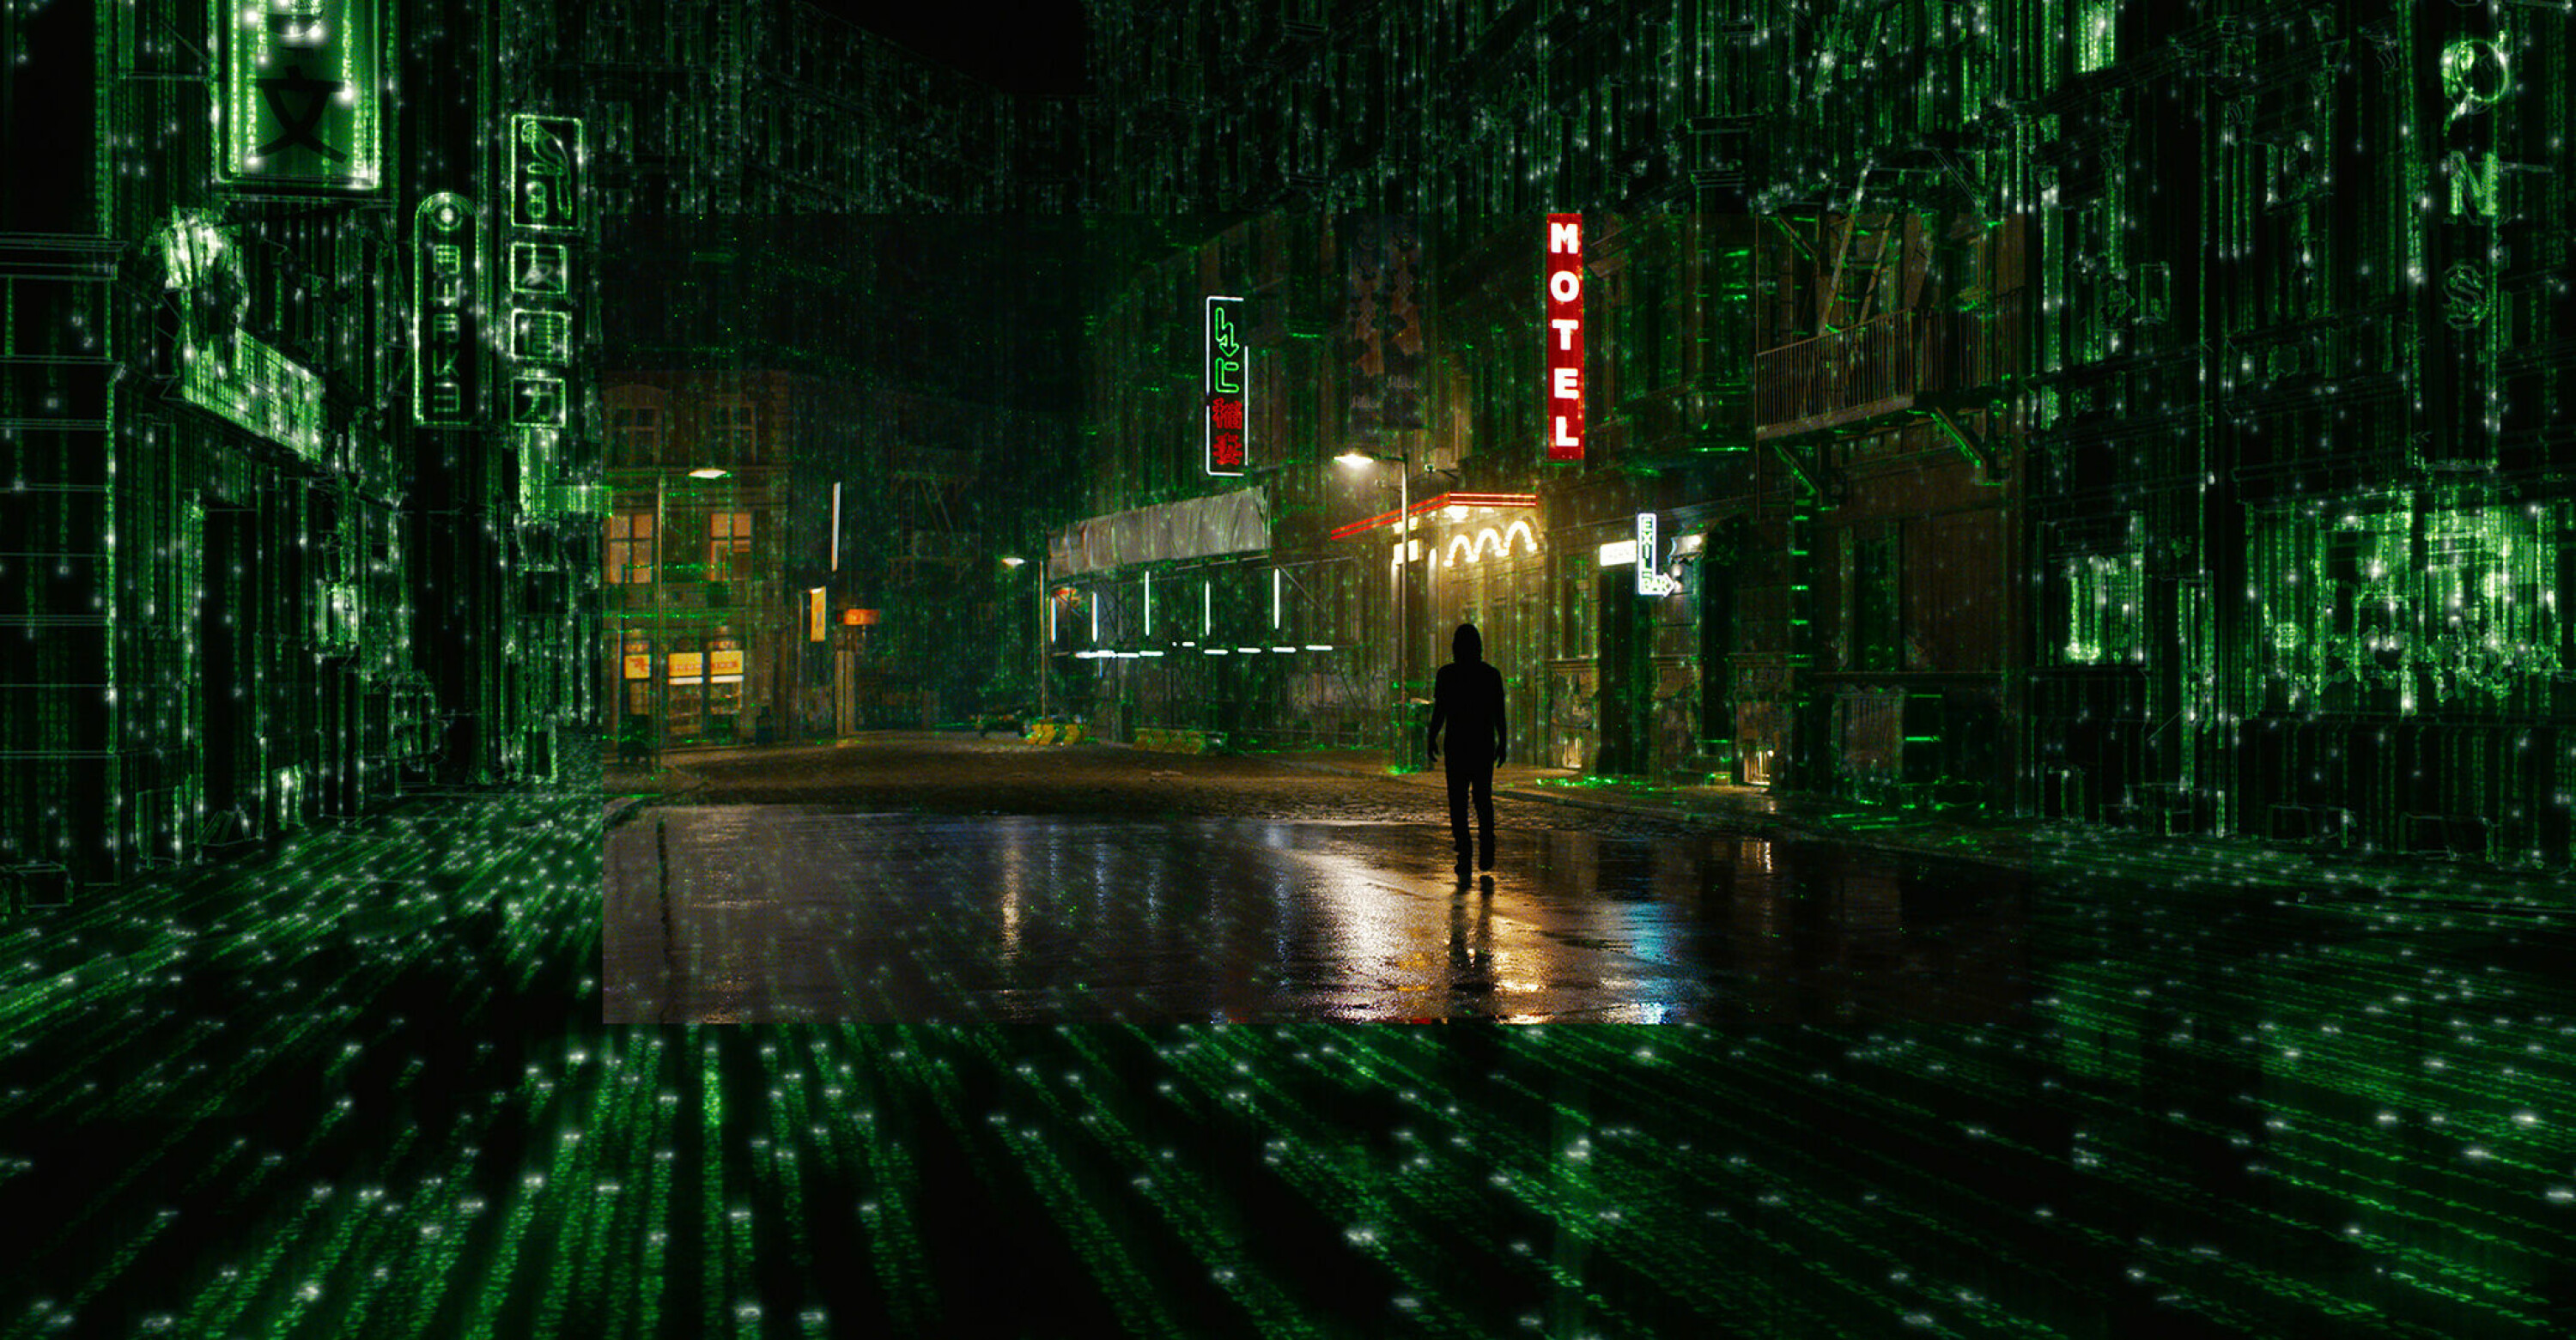 FORTSATT GODTERI FOR ØYET: Den ikonisk «The Matrix» er tilbake med sin stilistiske visuelle stil.